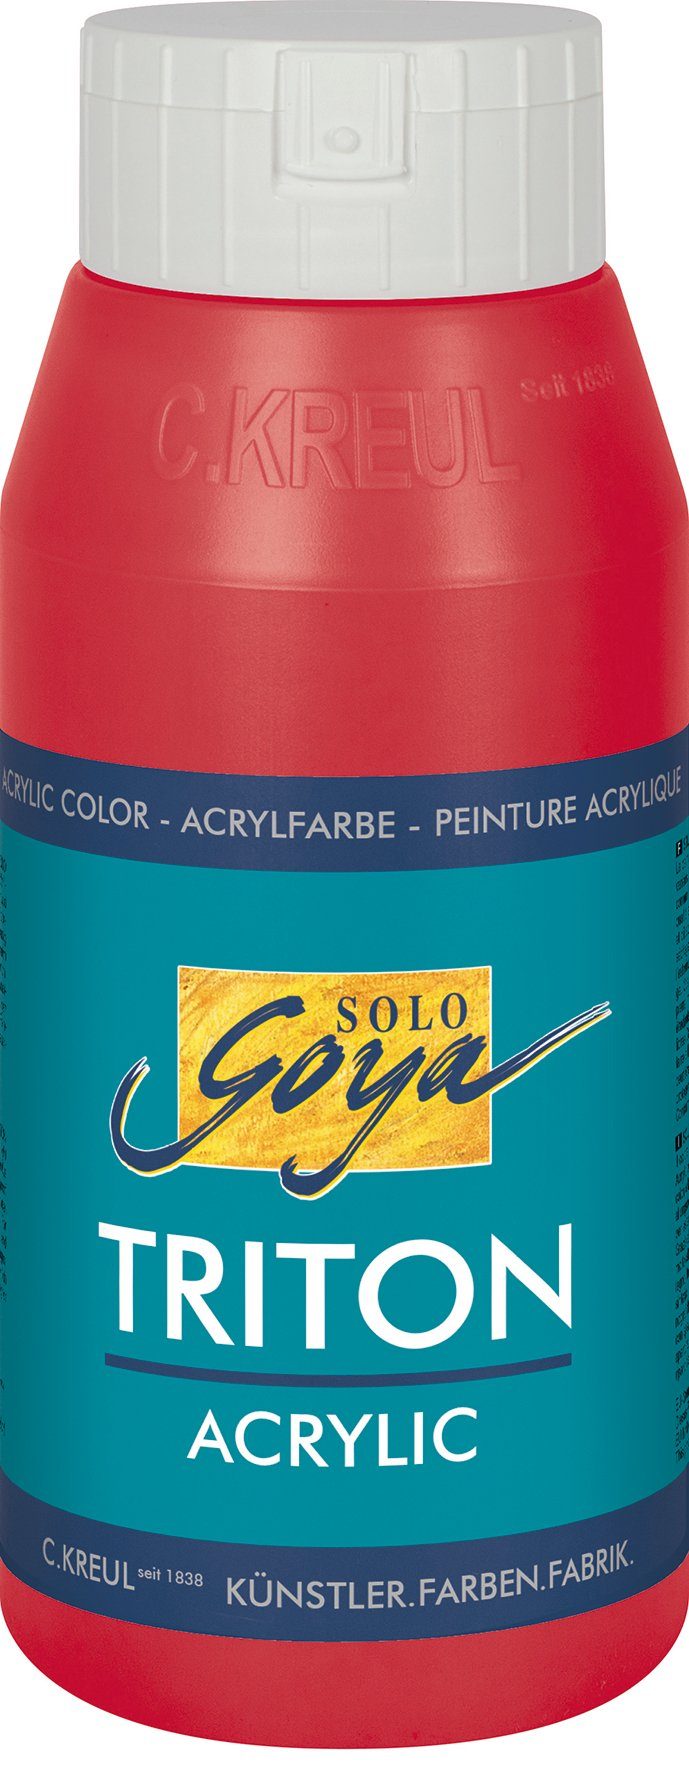 Solo Weinrot Kreul Acrylfarbe ml Goya 750 Triton Acrylic,